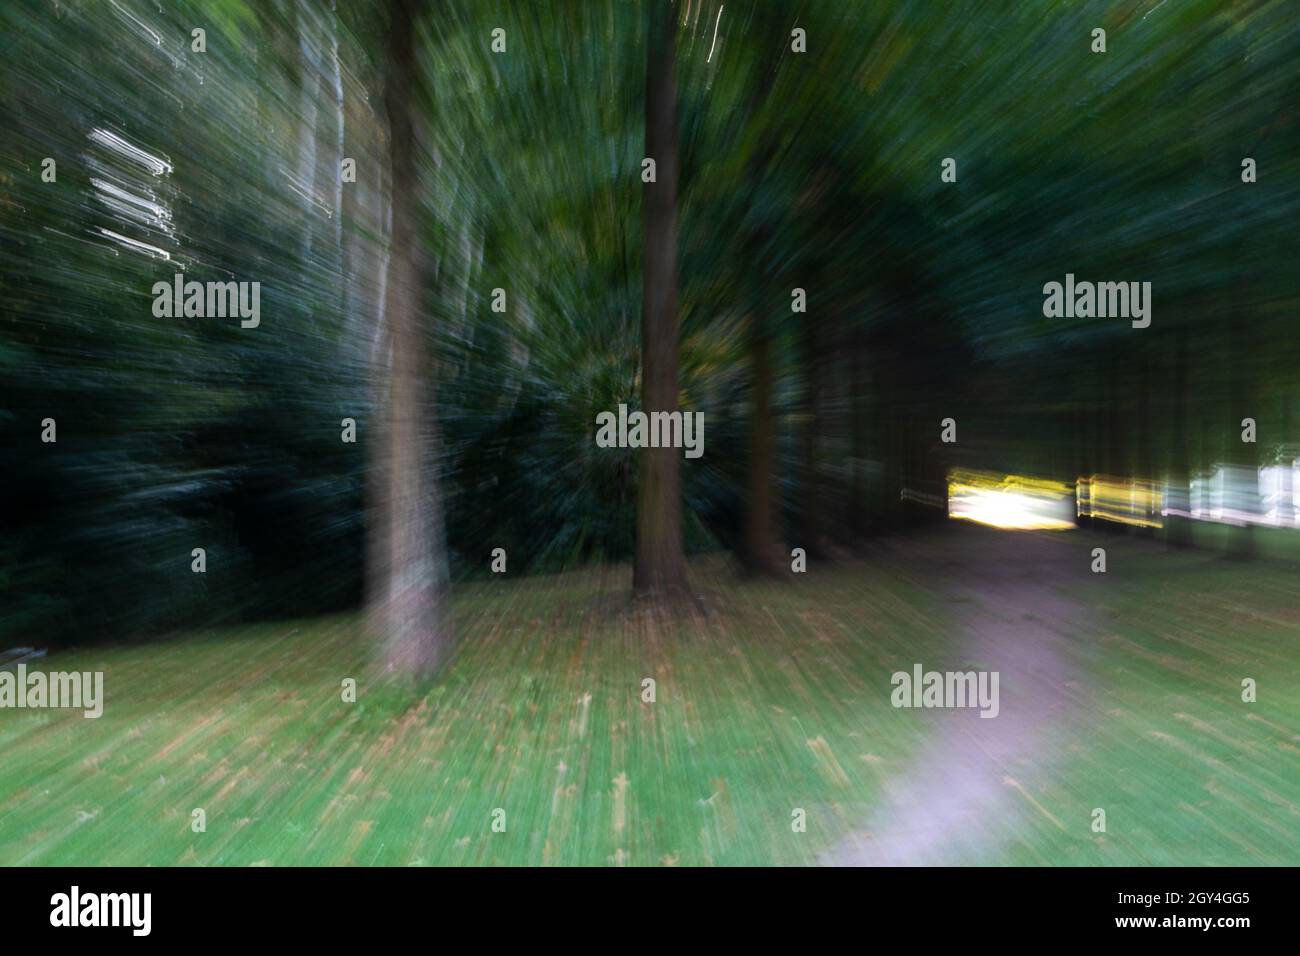 Ein Landschaftsbild mit viel Dynamik, ein Pfad rechts und links davon stehen Bäume es wirkt wie eine kleine Allee oder auch wie ein Tunnel aus Bäumen . Stock Photo